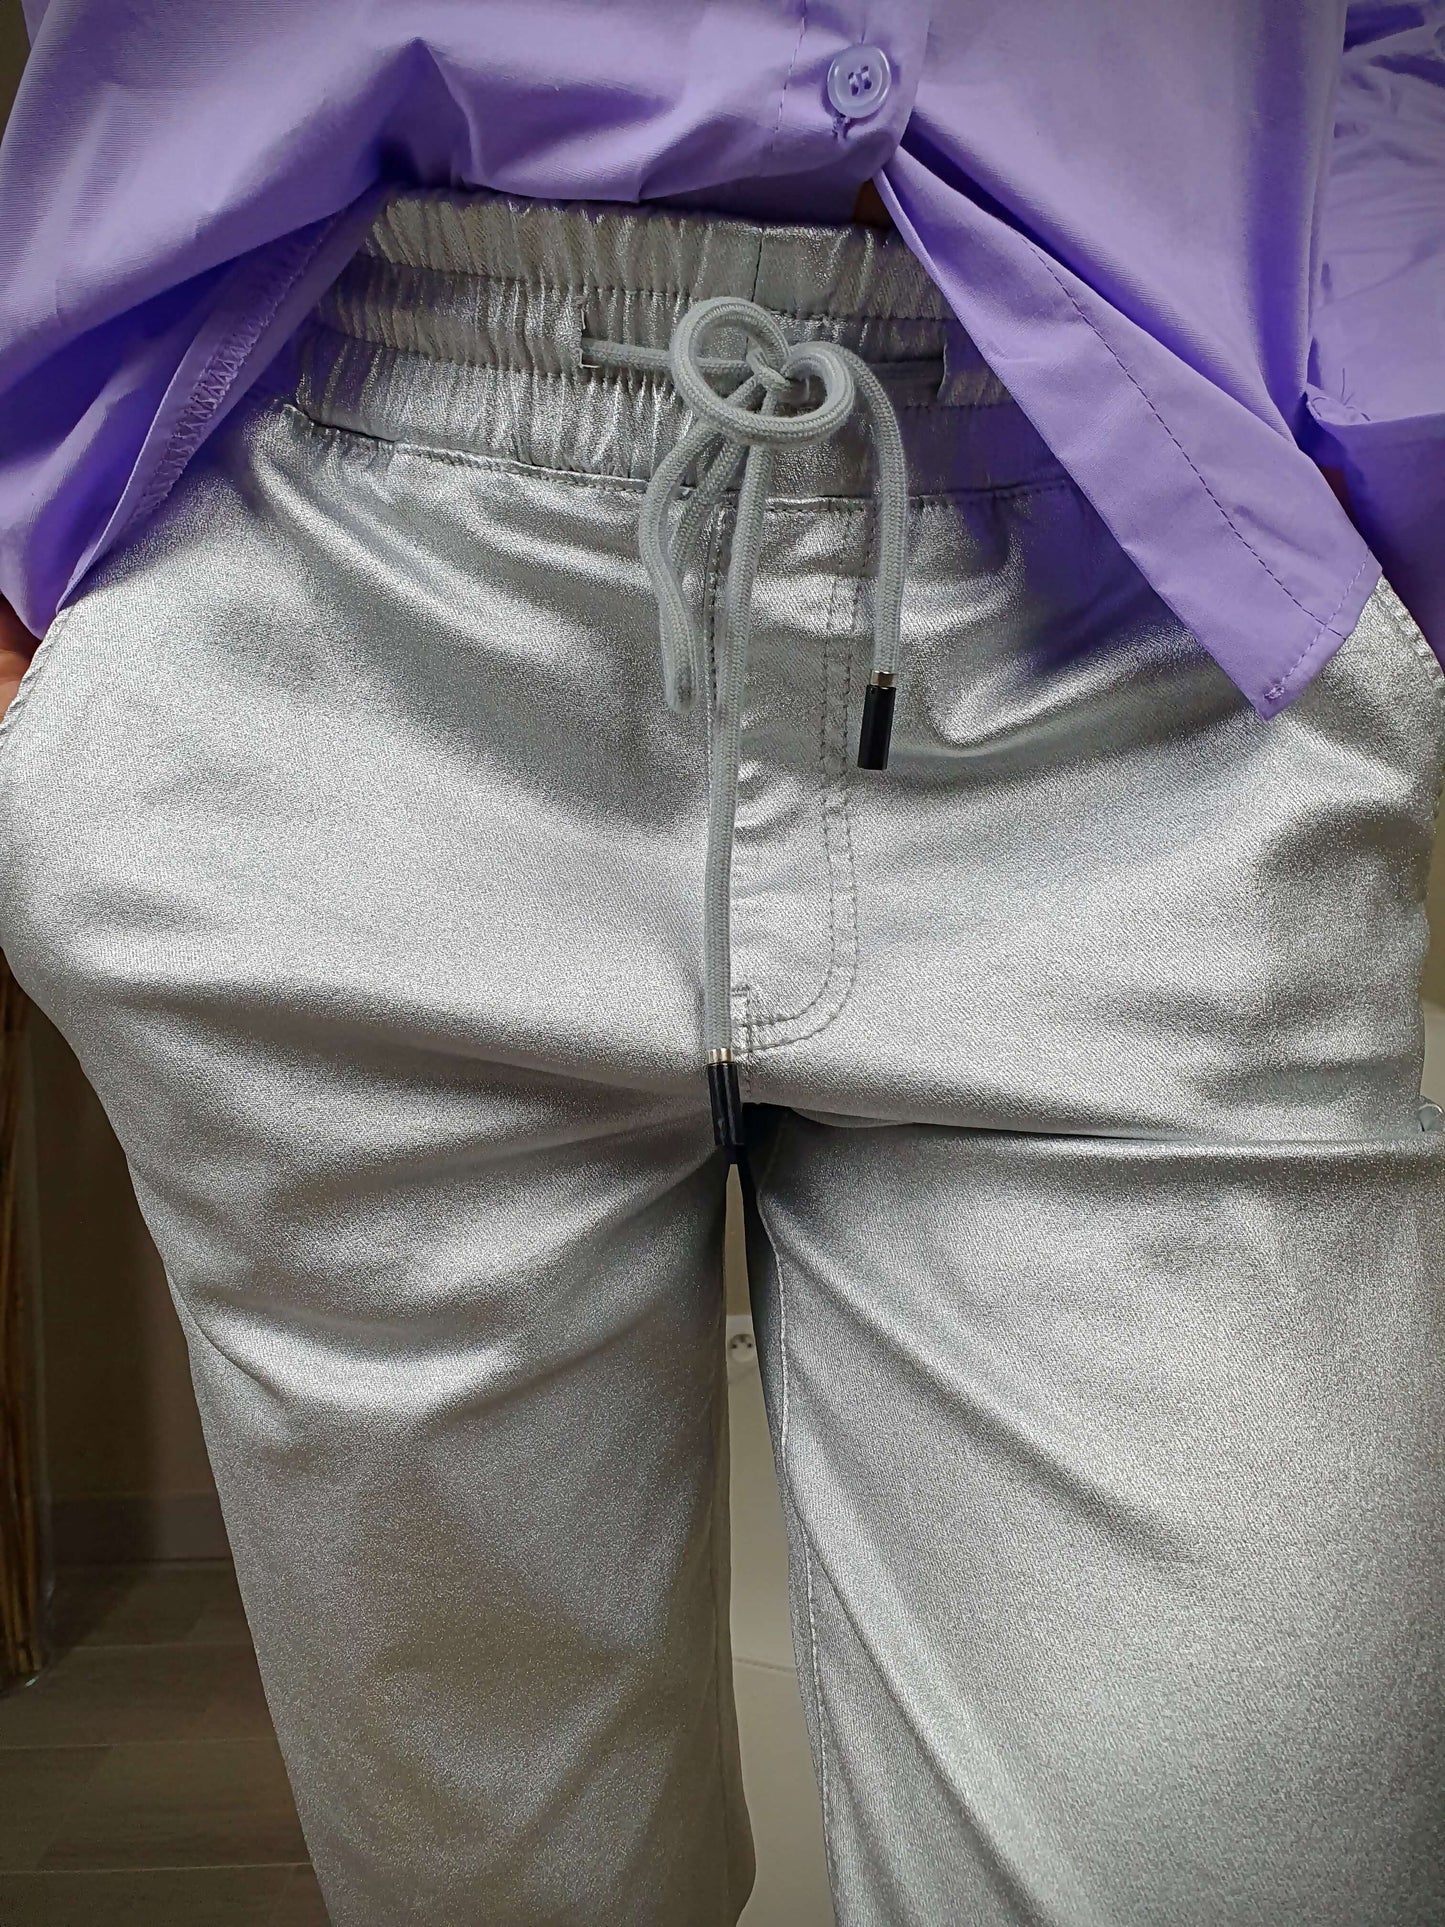 Pantalon argenté coupe Mom avec 1 poche italienne de chaque coté et deux fausses poches à l'arrière. La taille du pantalon est élastiquée et ajustable avec lien de serrage. A decouvrir sur www.gayano.fr